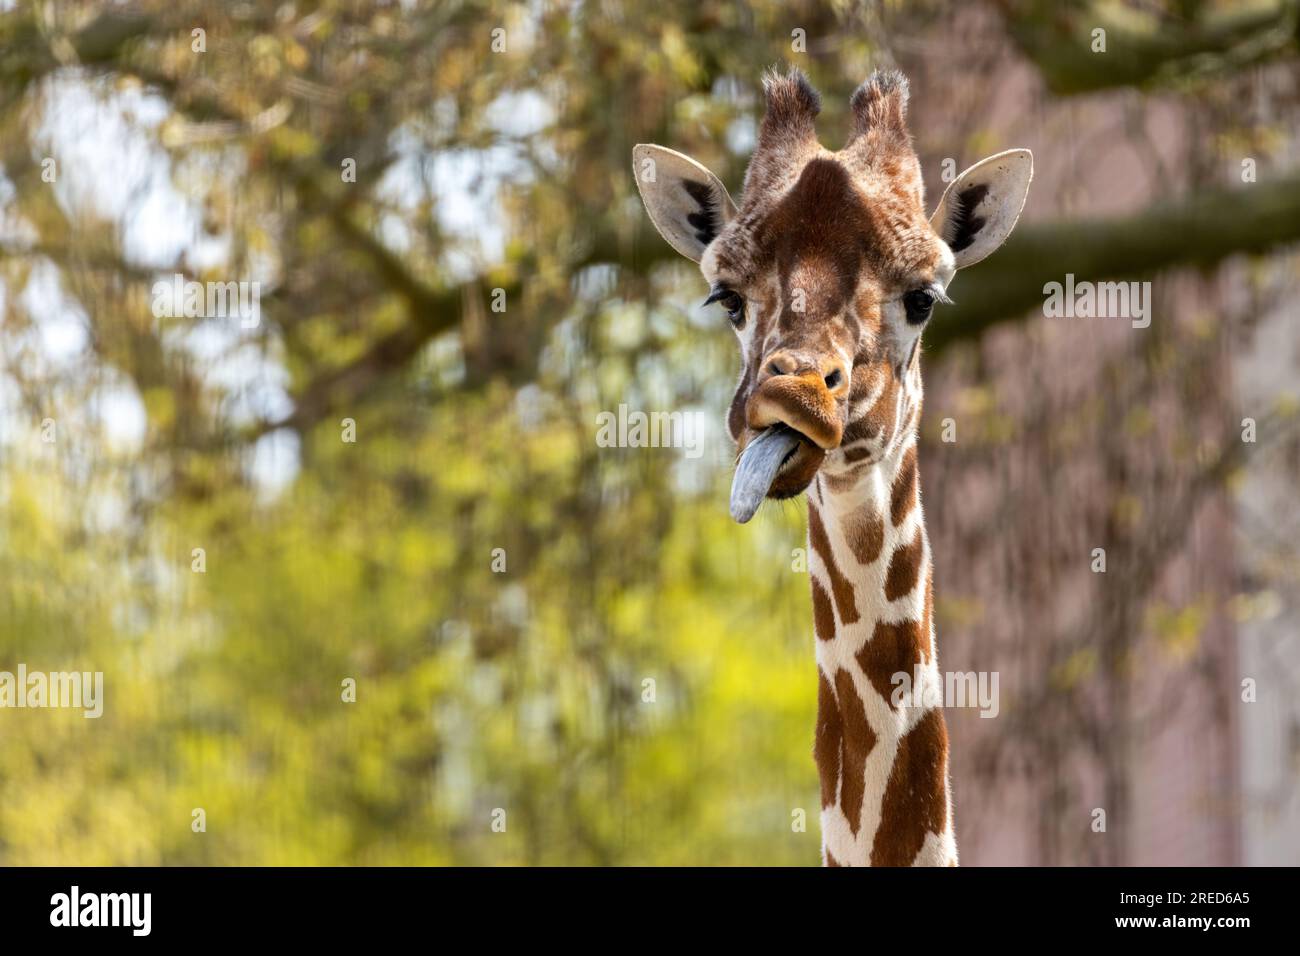 Giraffa che tira visi divertenti e si sporca la lingua lunga Foto Stock